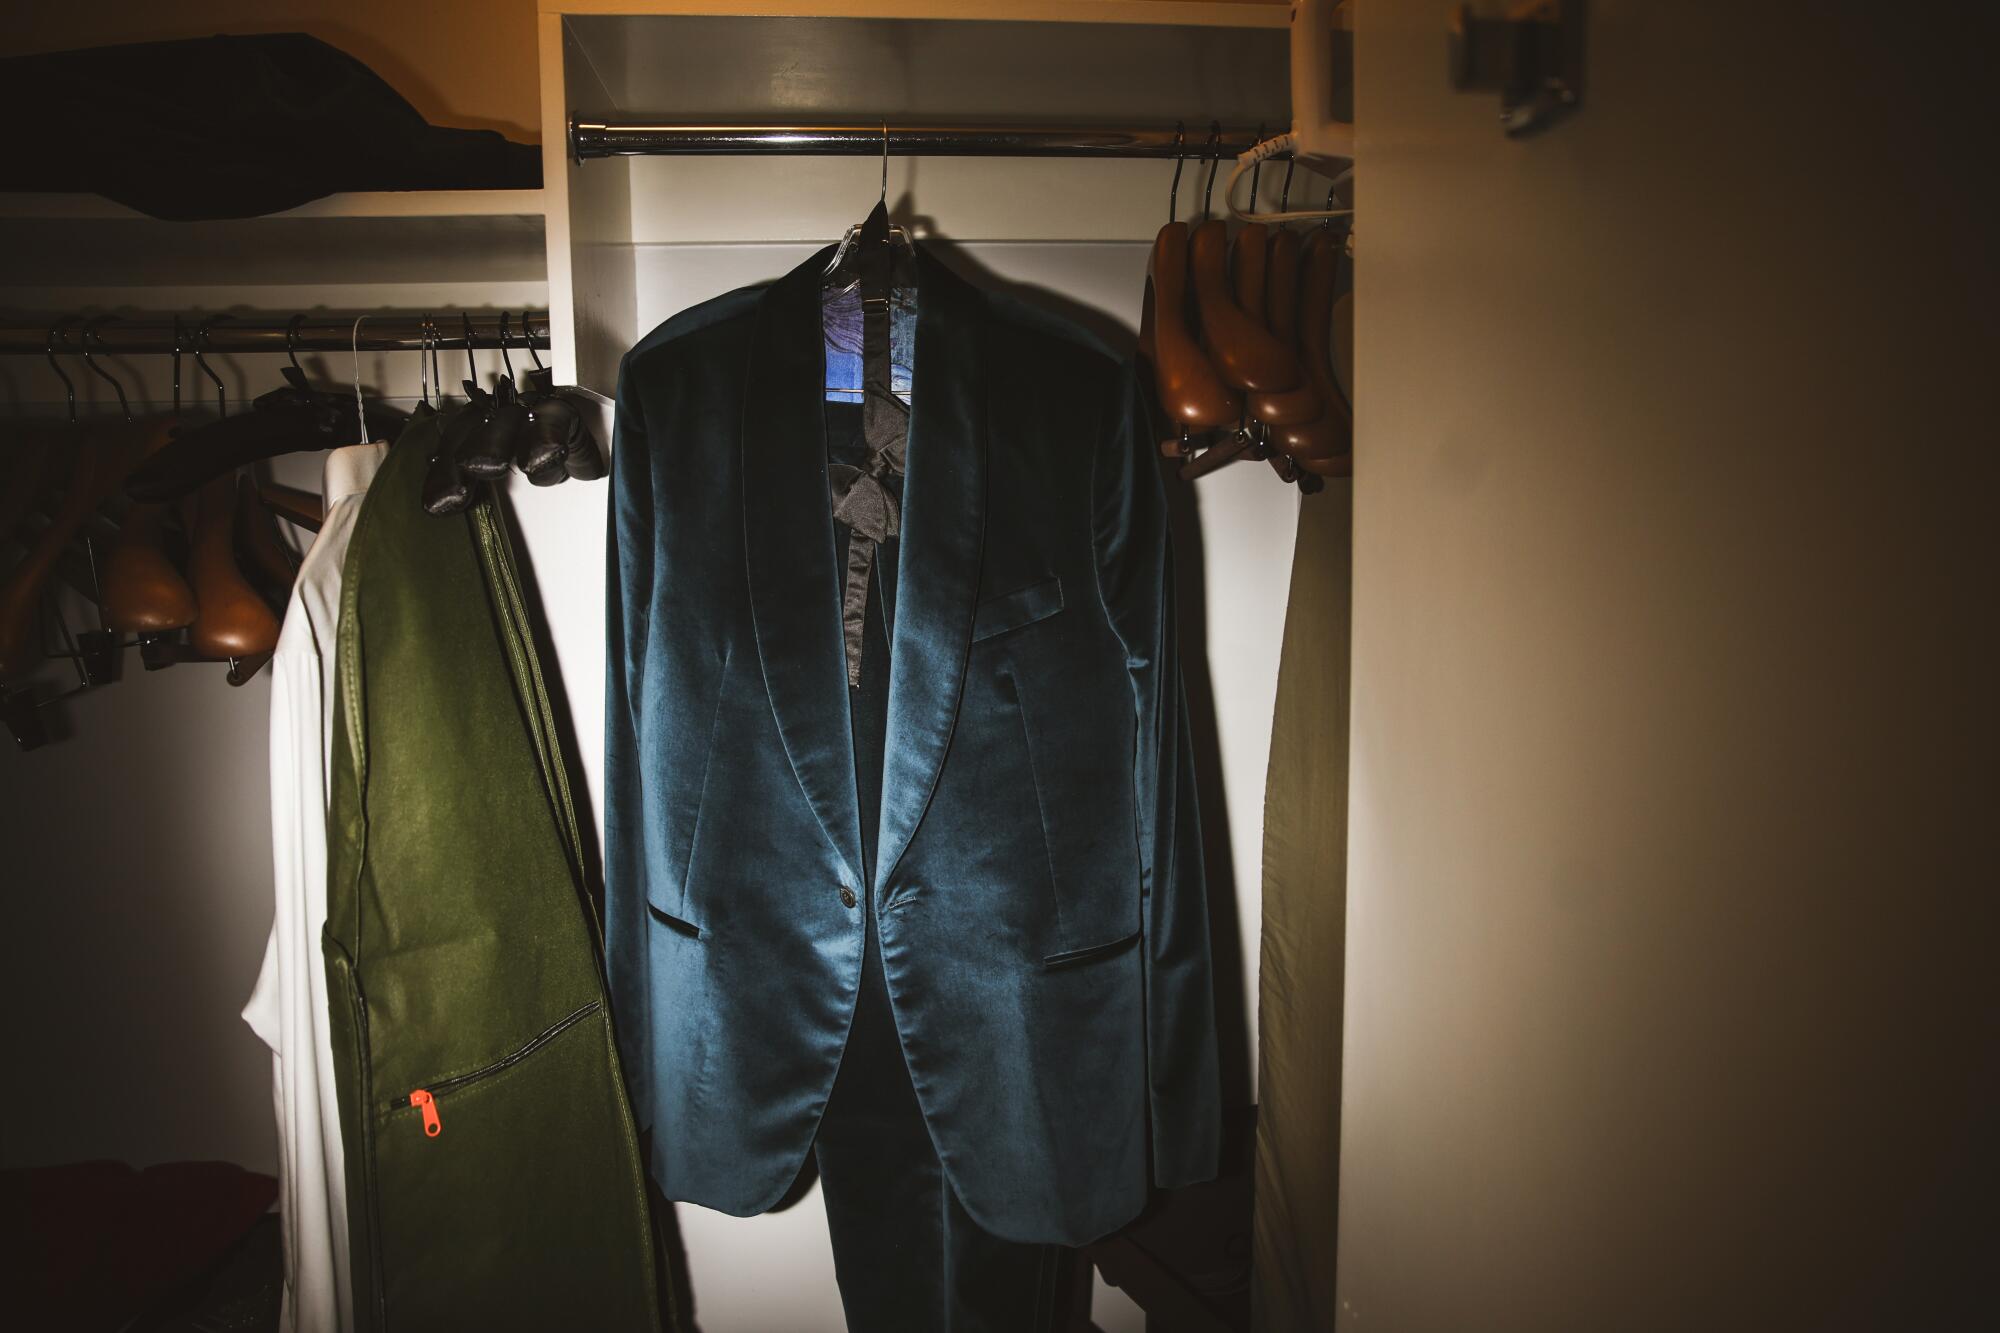 A tuxedo hangs in a closet.